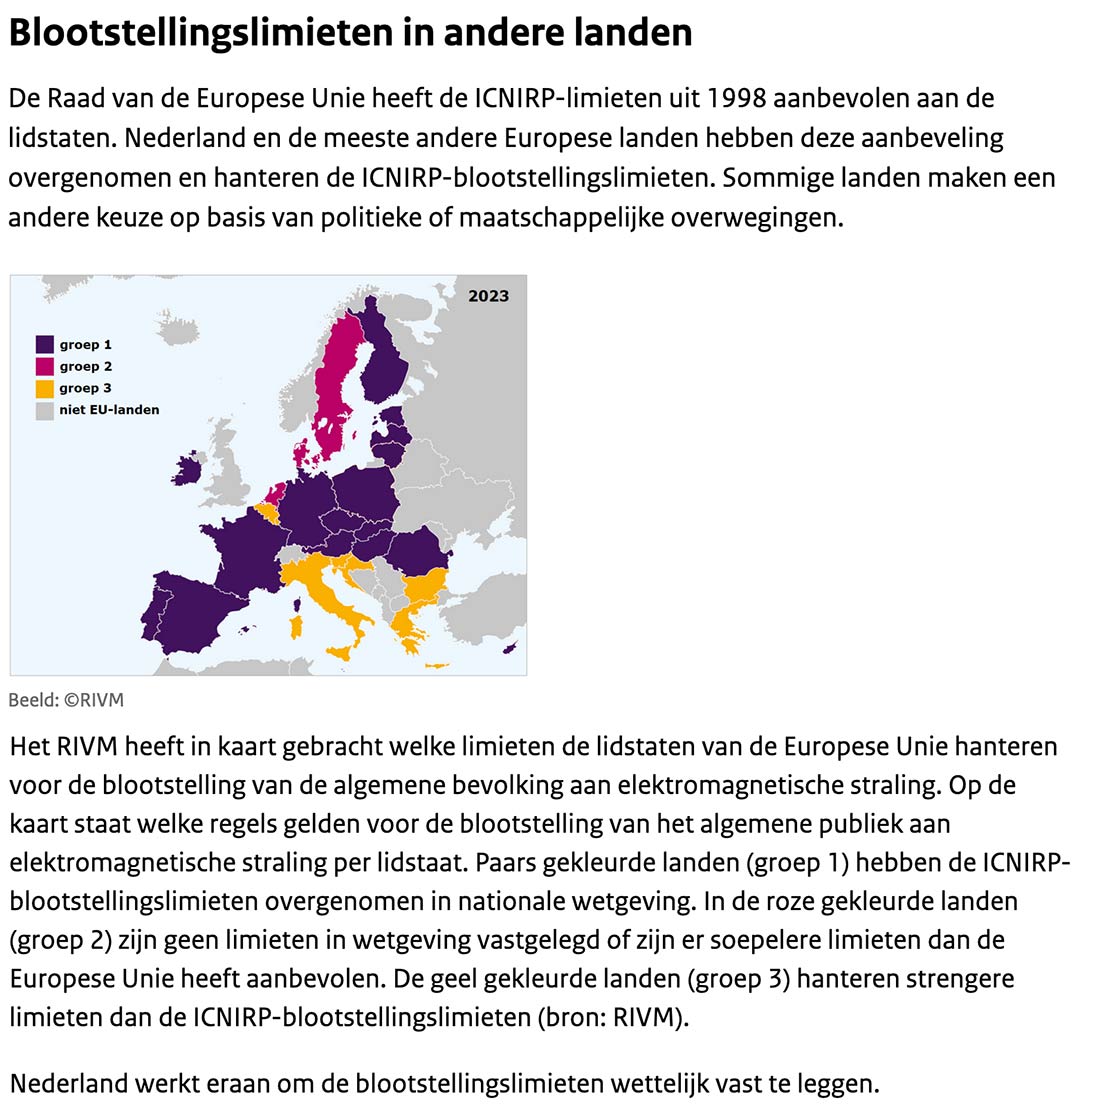 Blootstellingslimieten gehanteerd door Europese landen. Bron: antennebureau.nl/